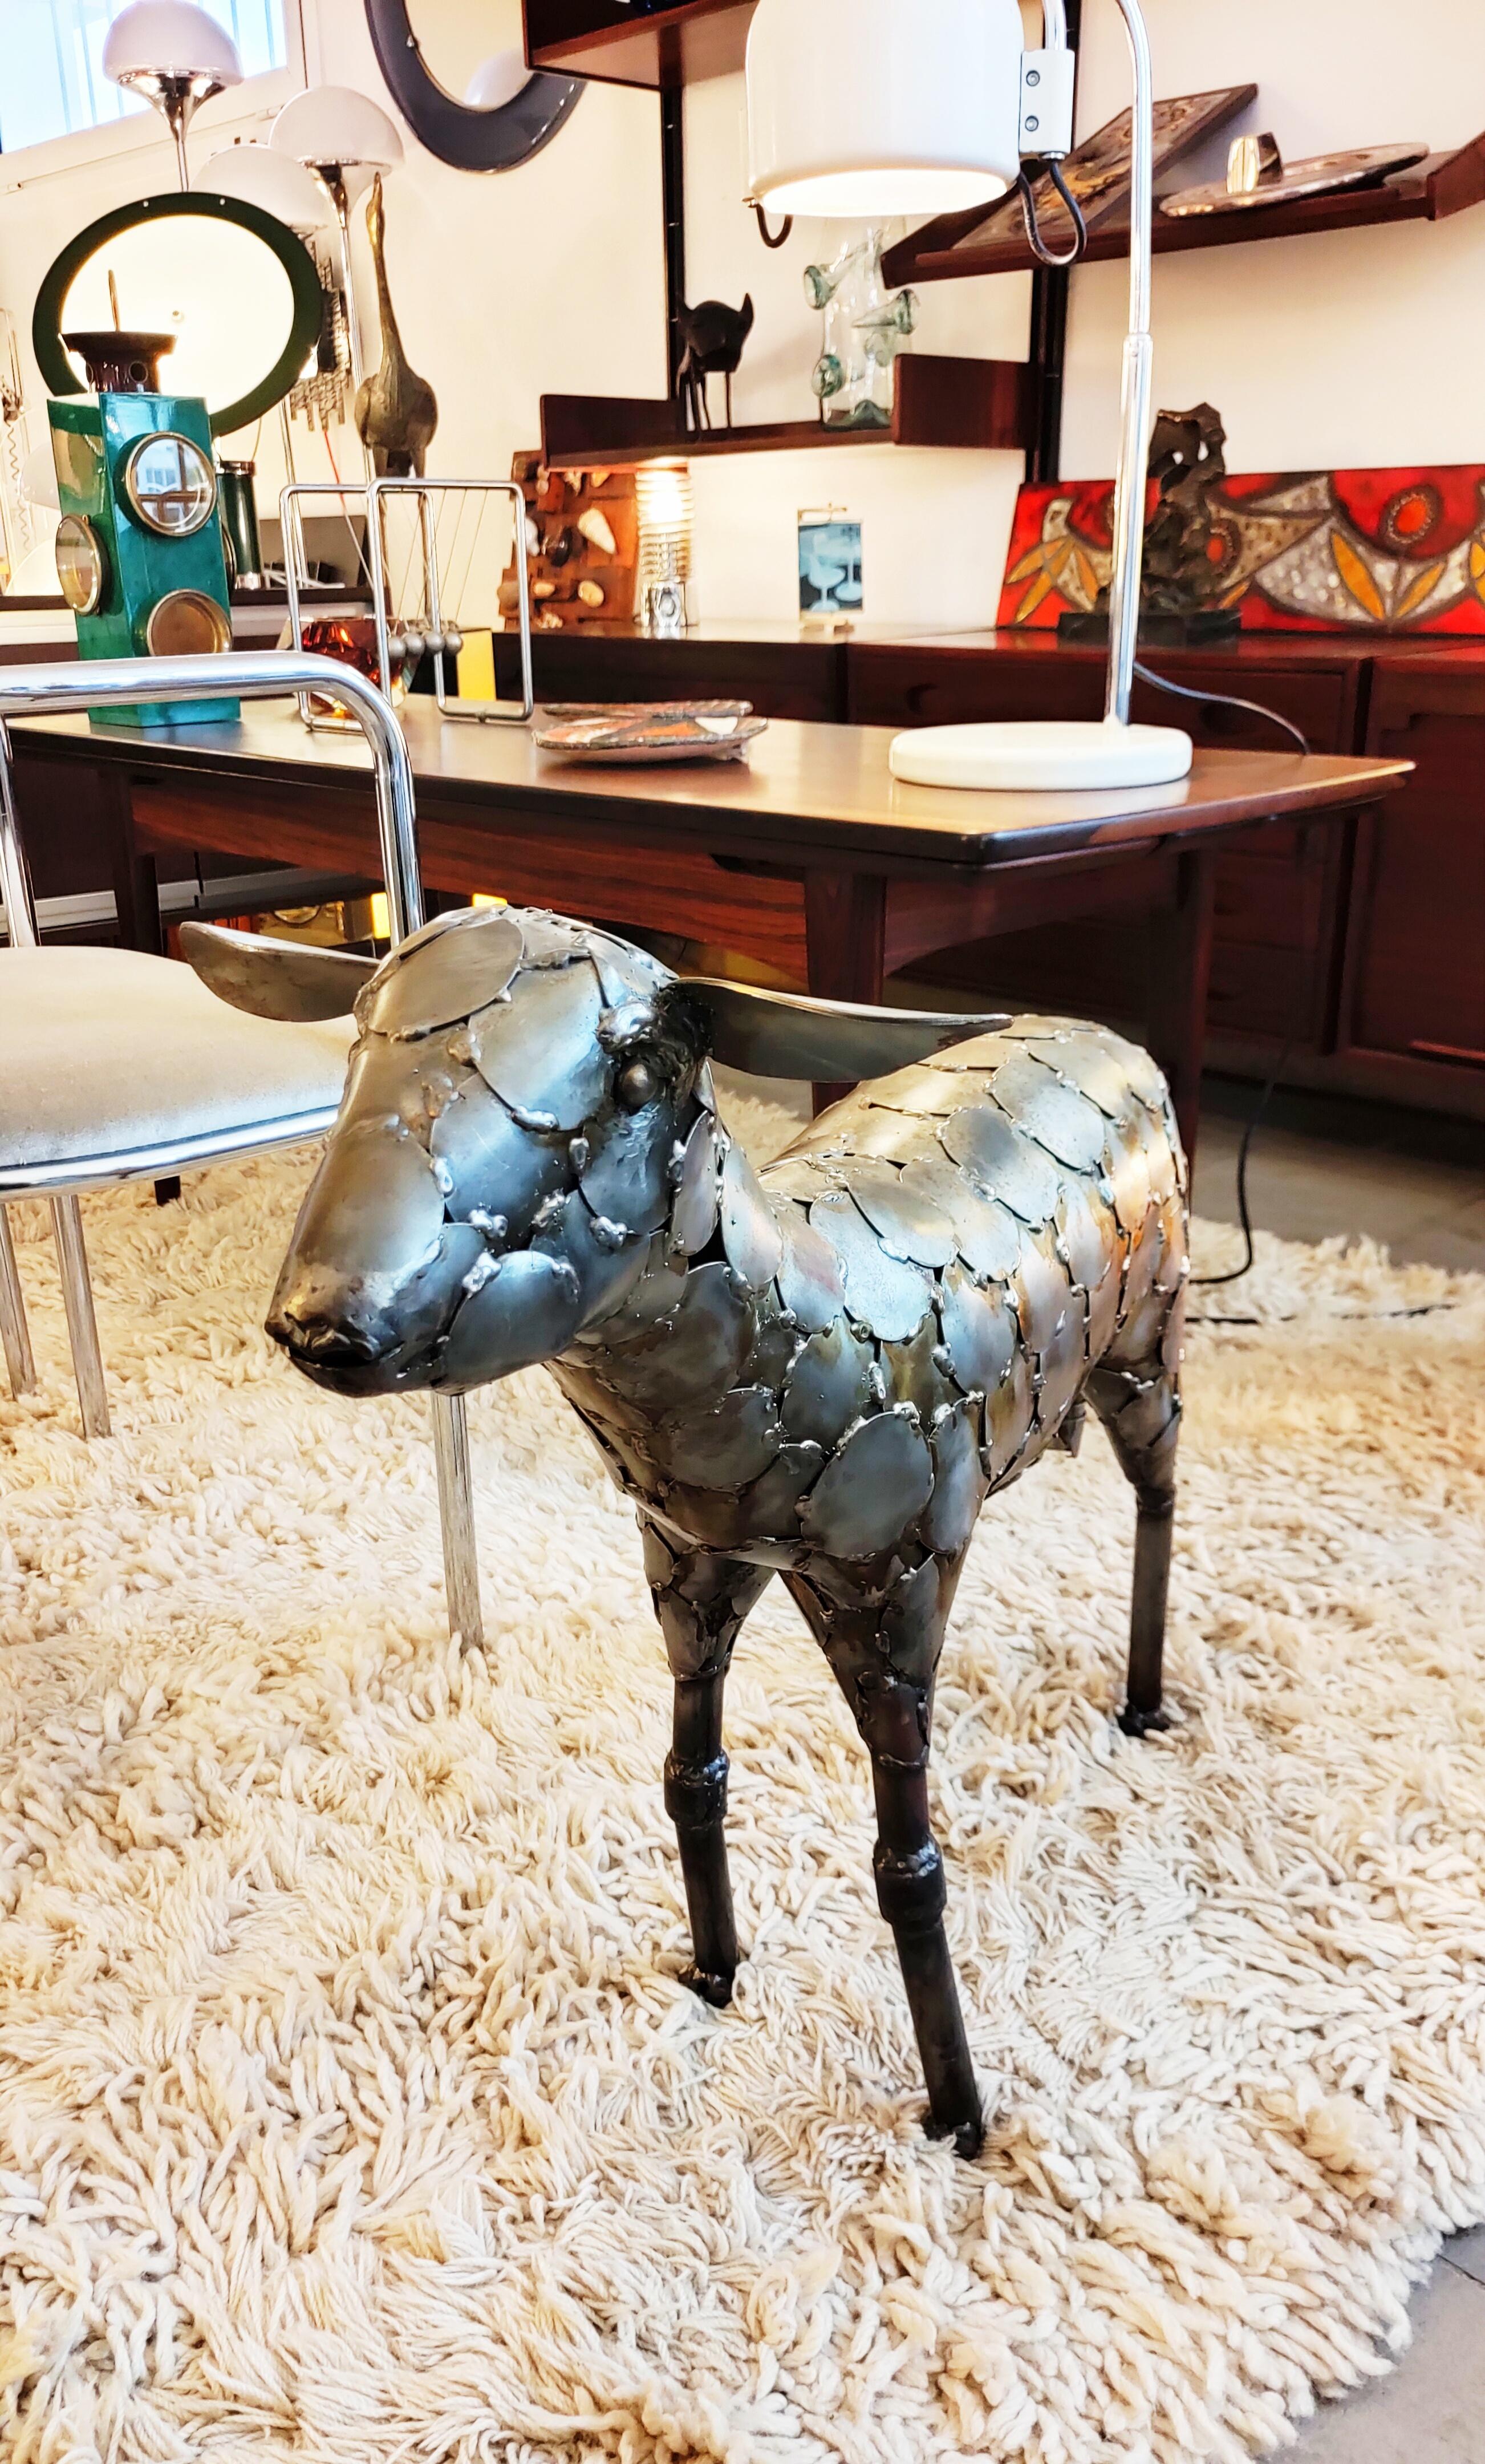 Schöne und seltene große Schafskulptur aus Metall, hergestellt in Spanien in den 1970er Jahren.
Dieses Schaf hat einen unglaublichen, sehr realistischen Ausdruck, diese Arbeit ist wirklich sehr gut gemacht.